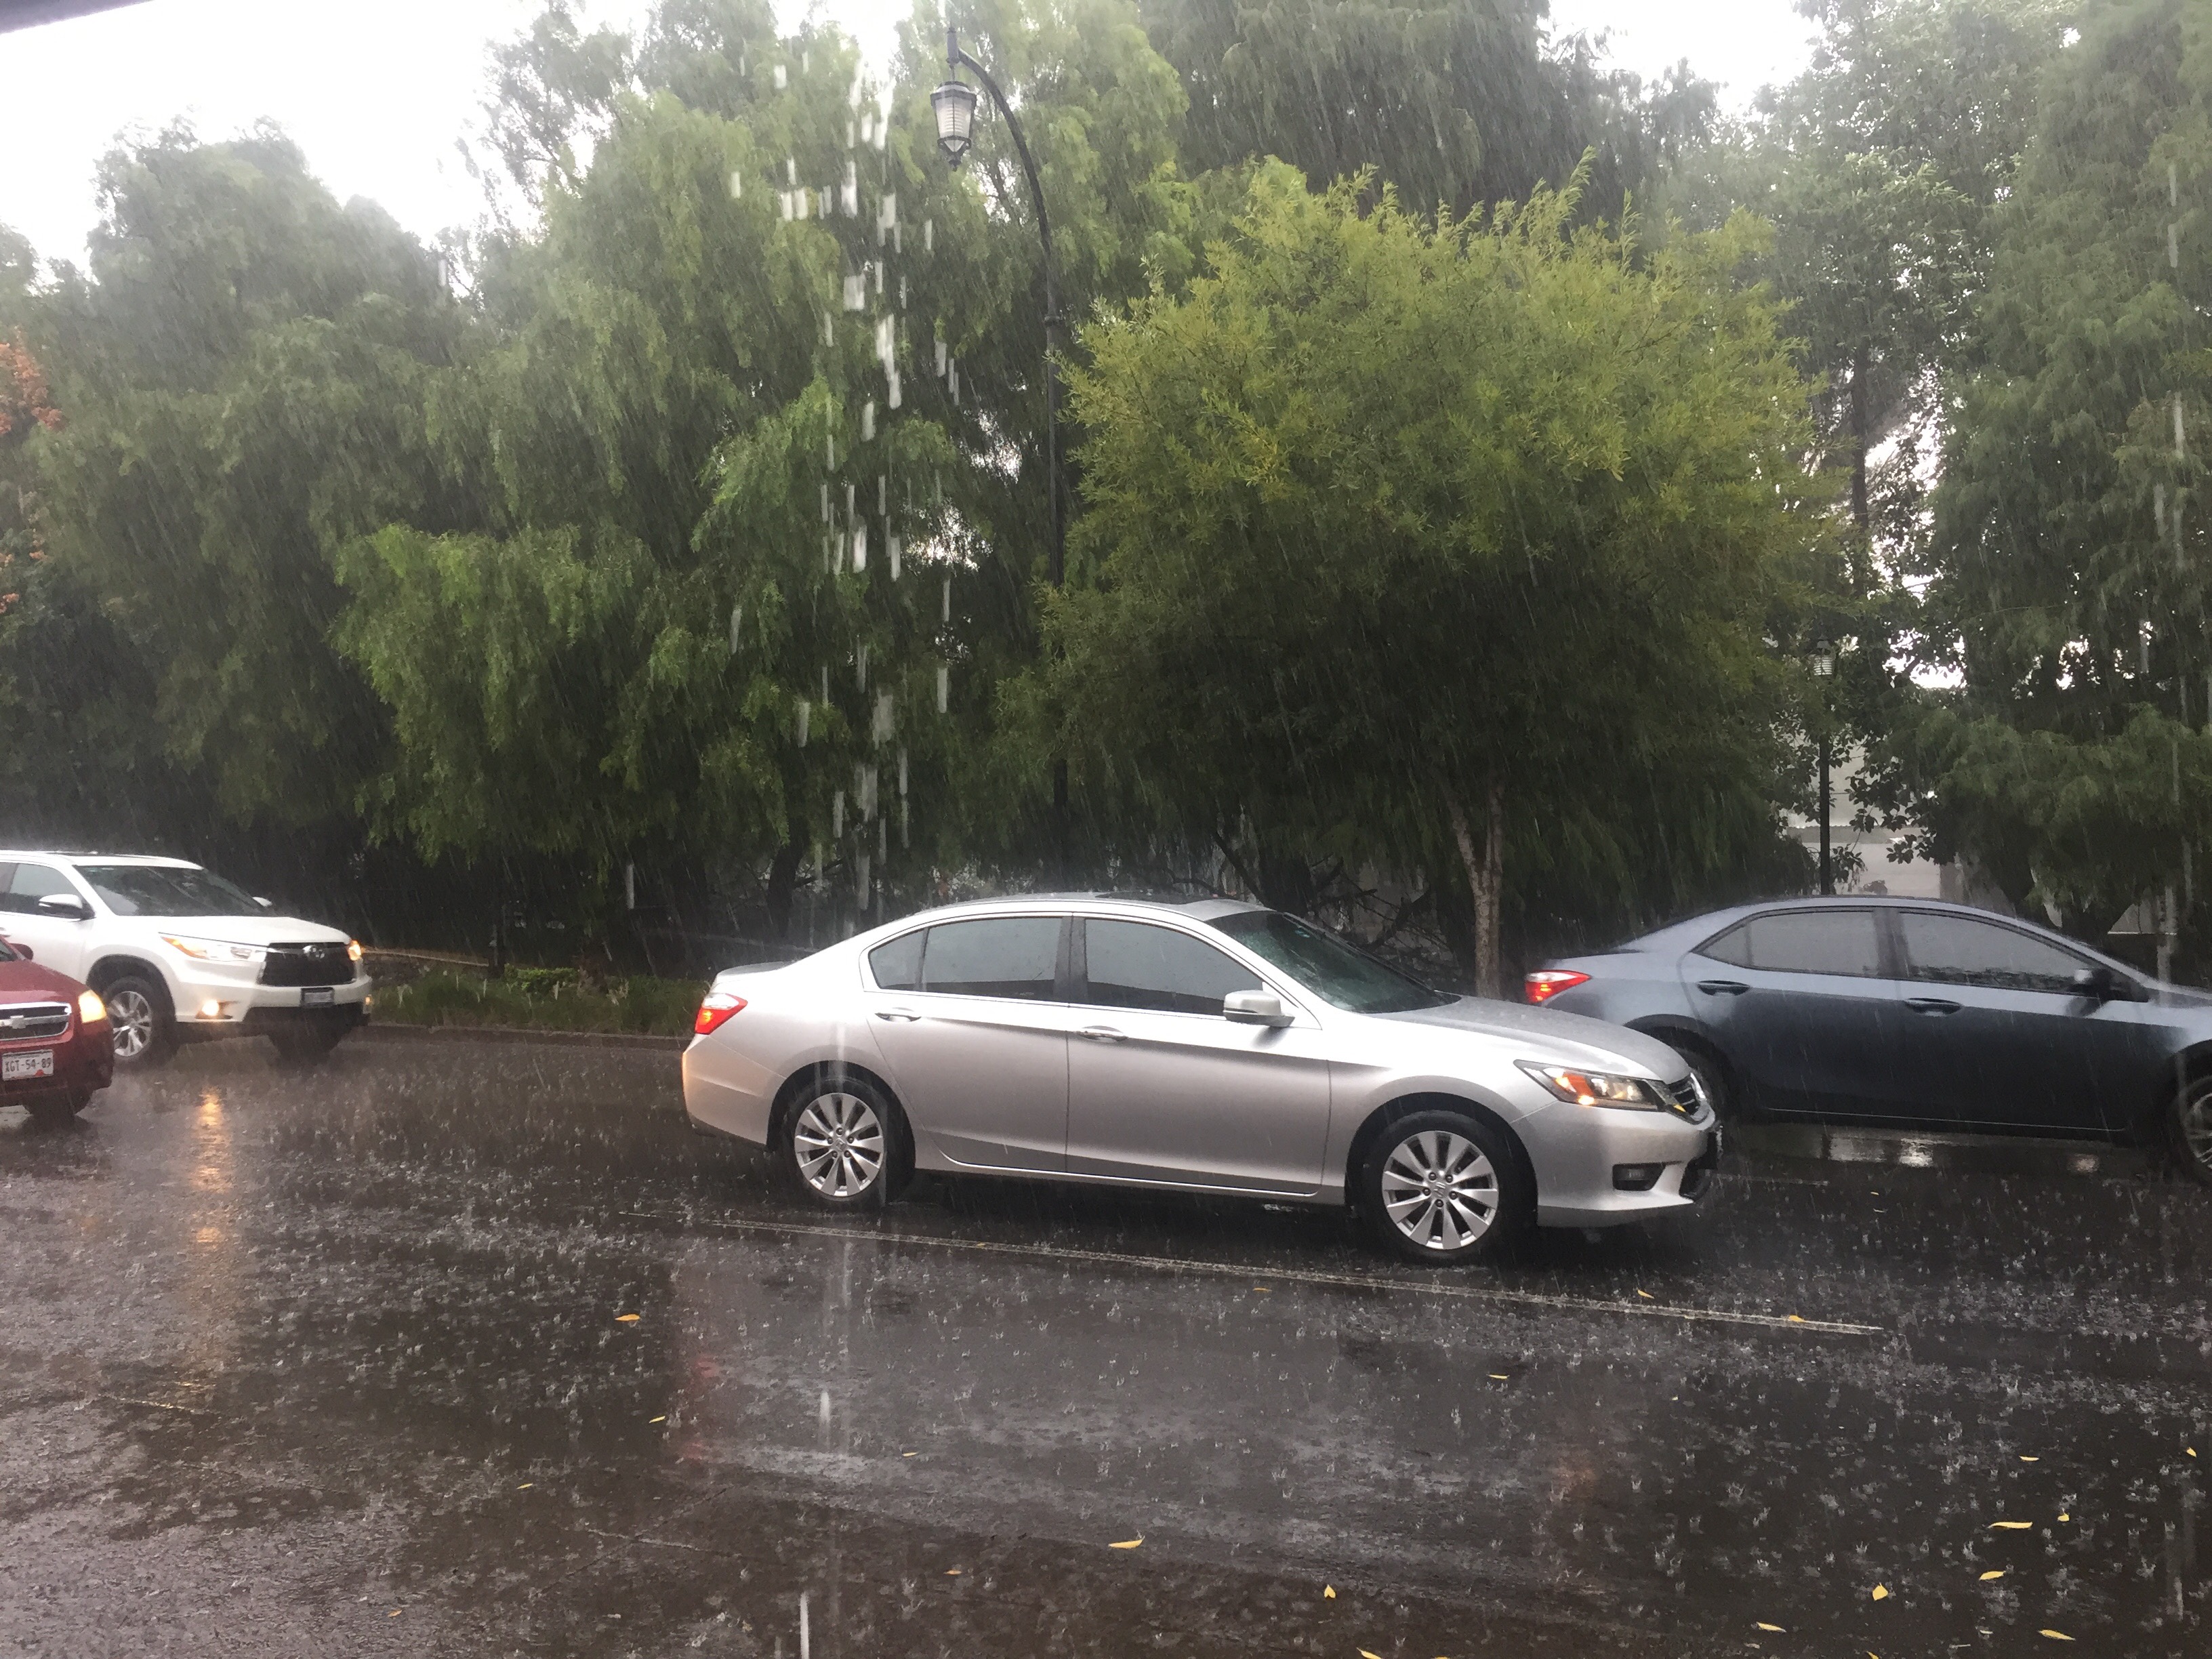  Lluvias causan afectaciones leves en la zona sur de la ciudad